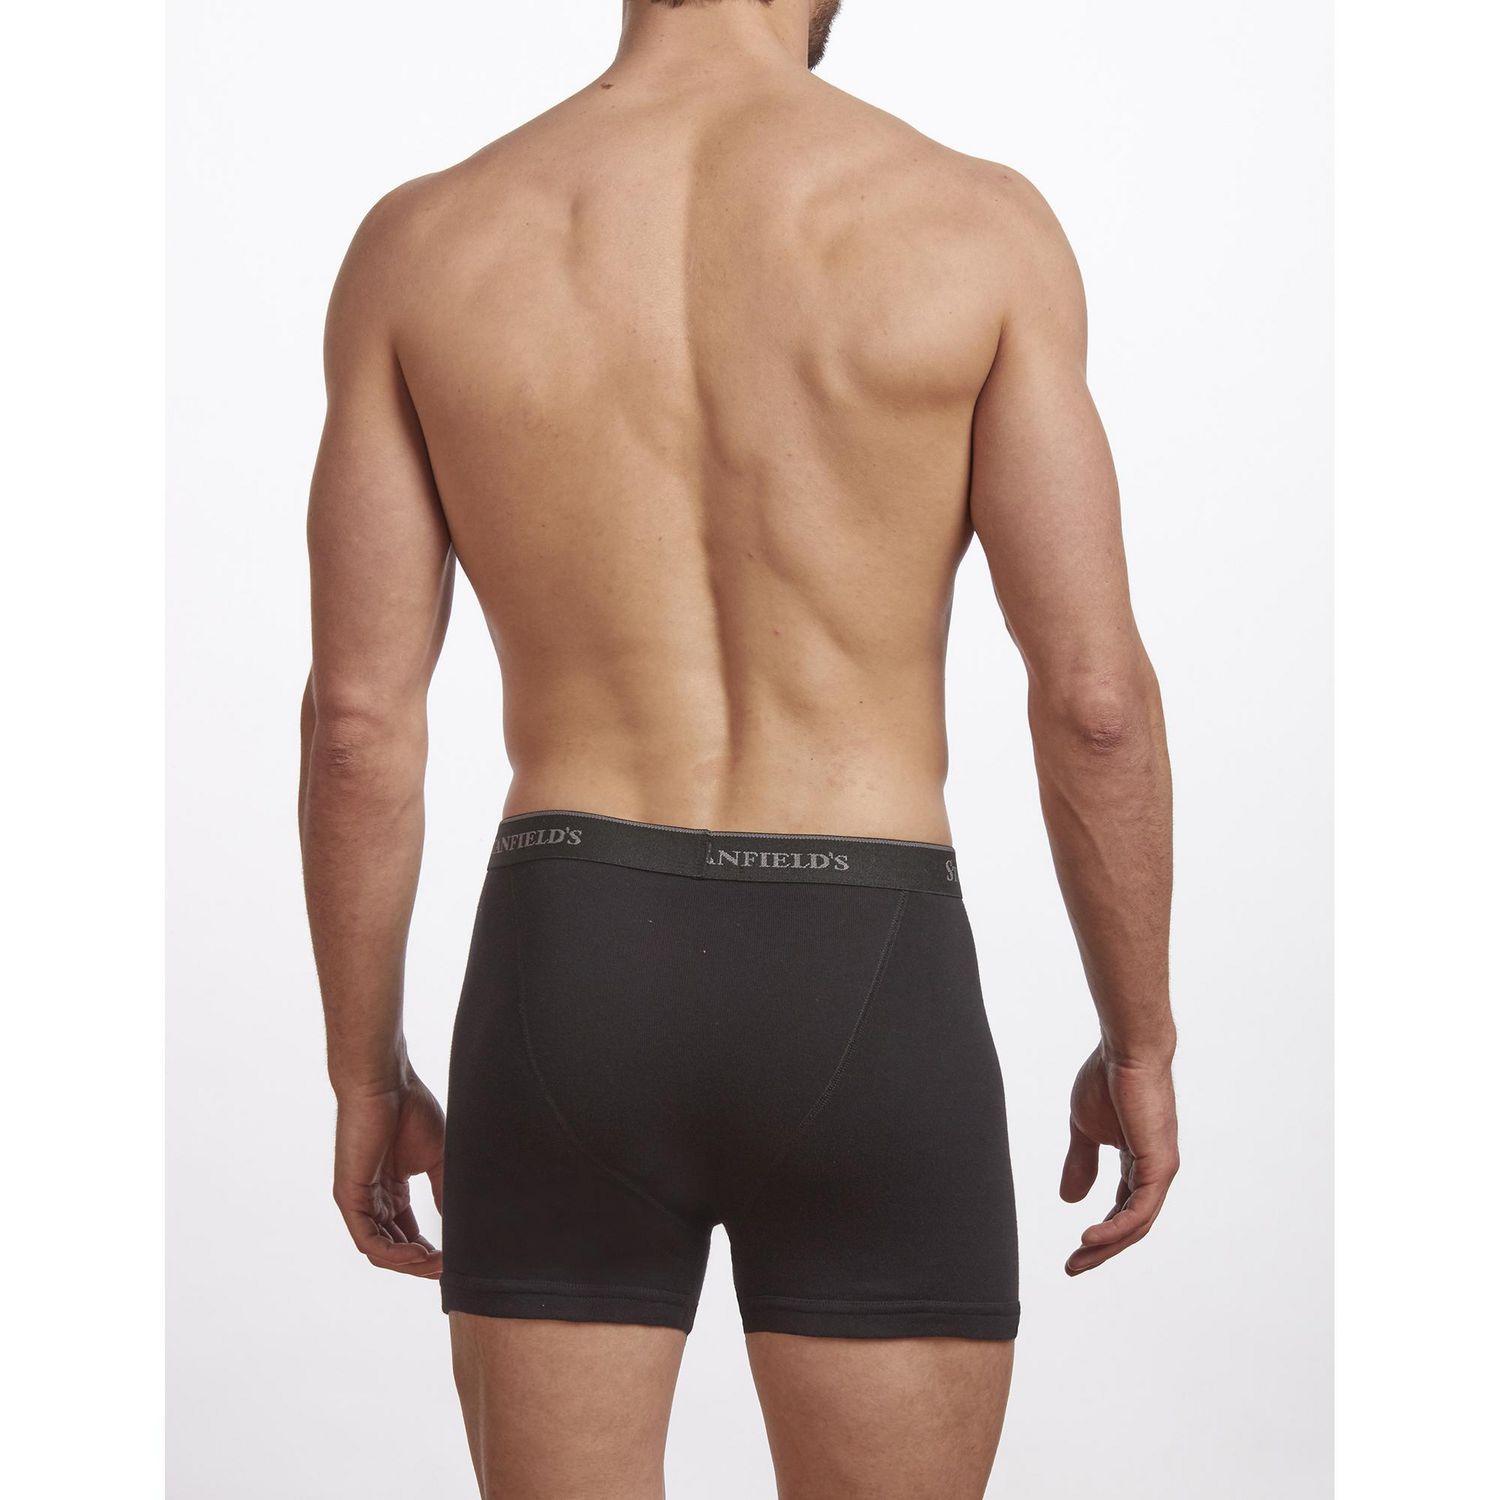 Belton Full Cut Briefs/ Men's Underwear (2 Pack) (50,000 Bags) in